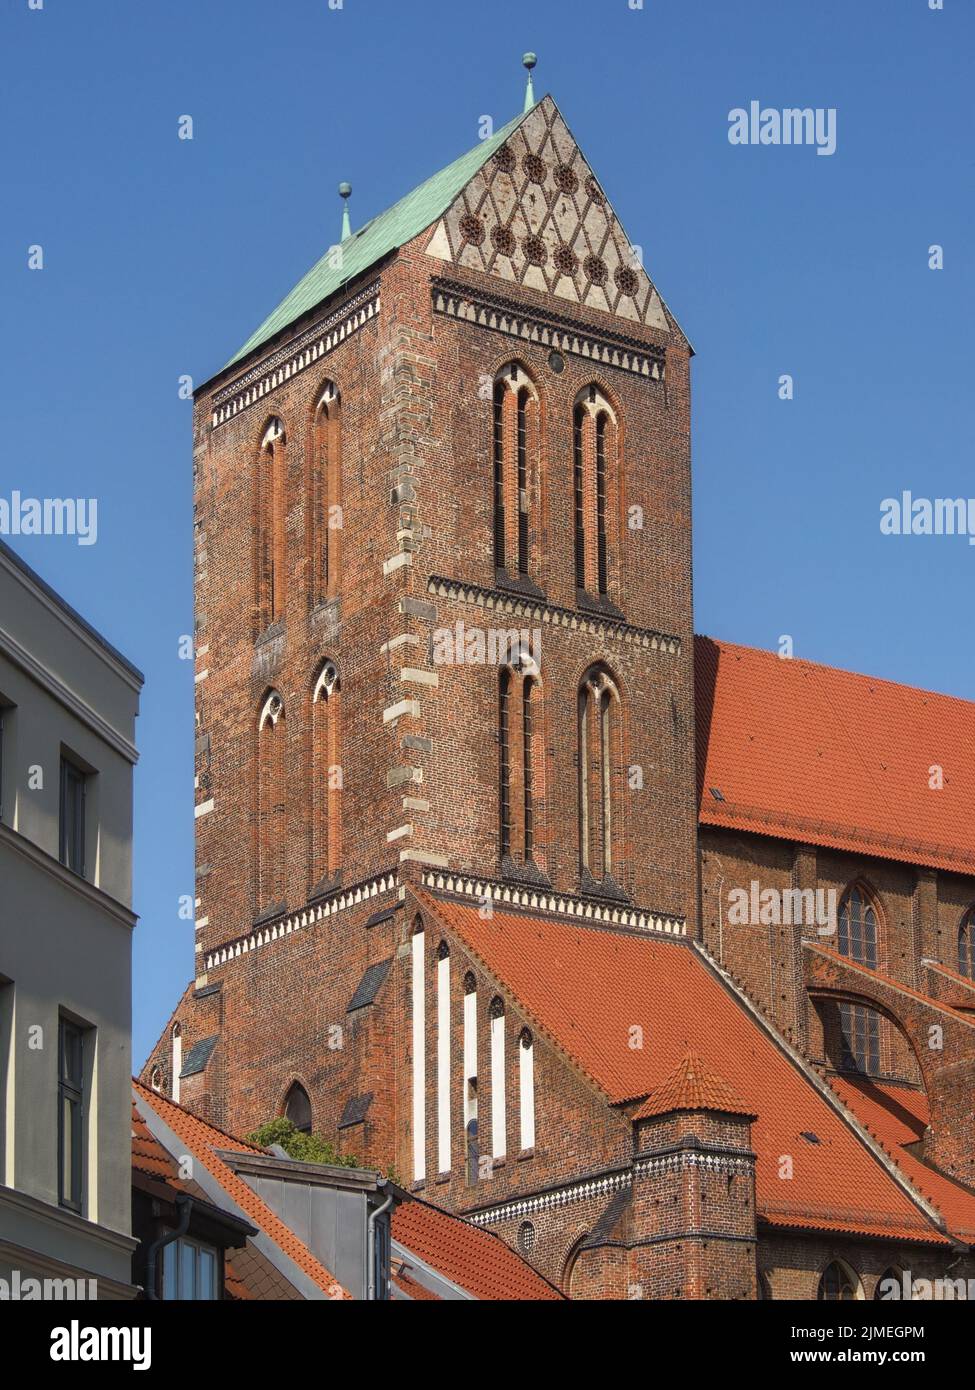 Wismar - St. Nicholas Church, Germany Stock Photo